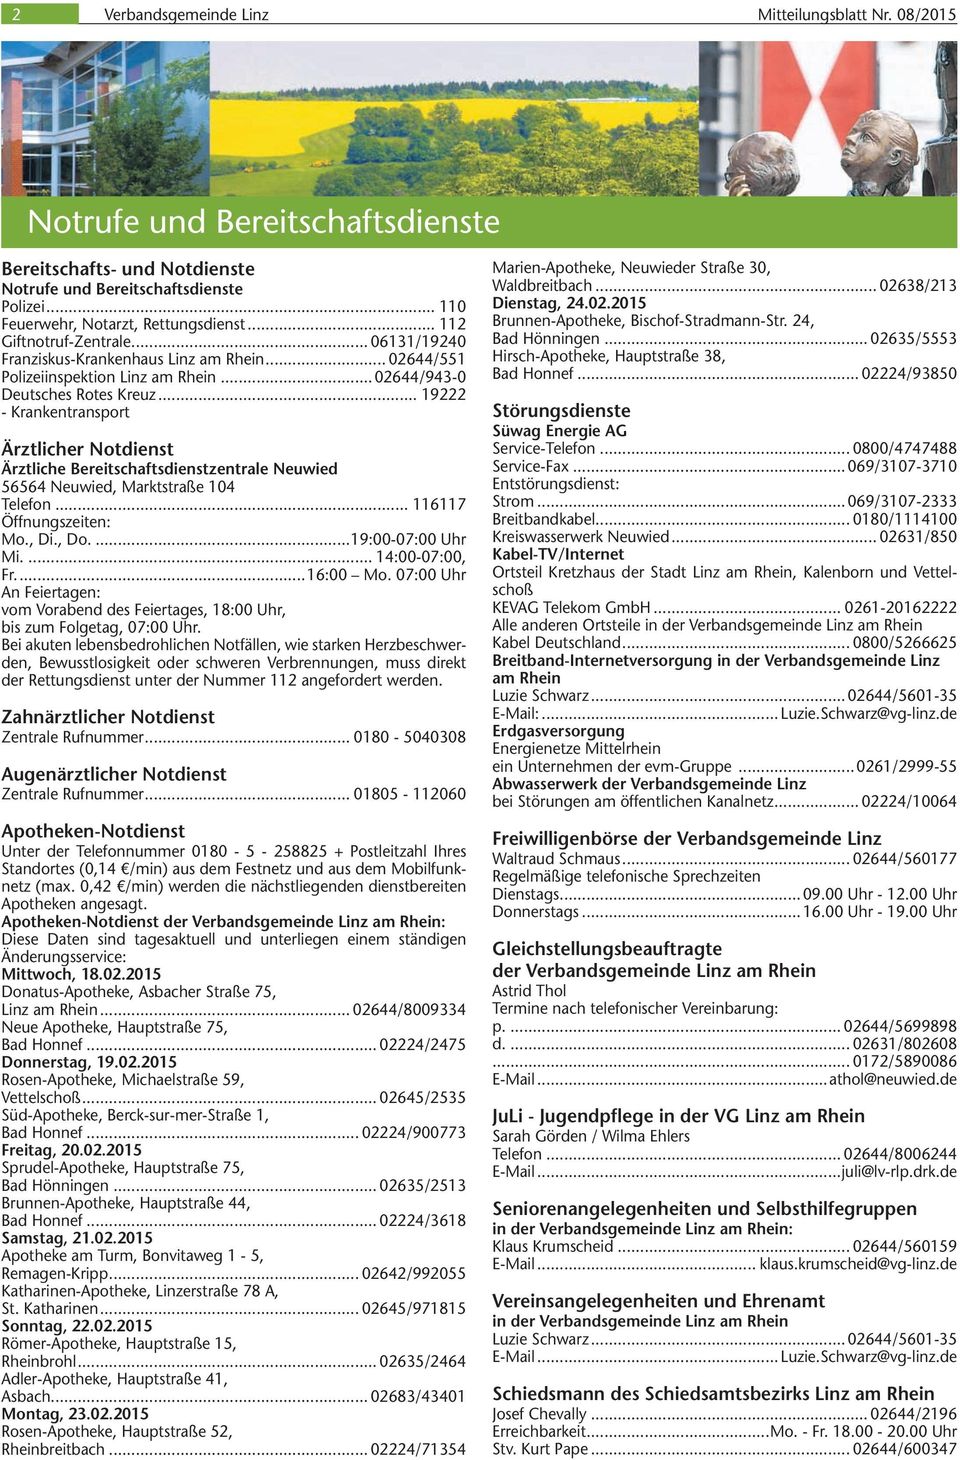 Krankentransport „rztlicher Not nst „rztliche Bereitschafts nstzentrale Neuwied Neuwied Marktstraße 104 Telefon